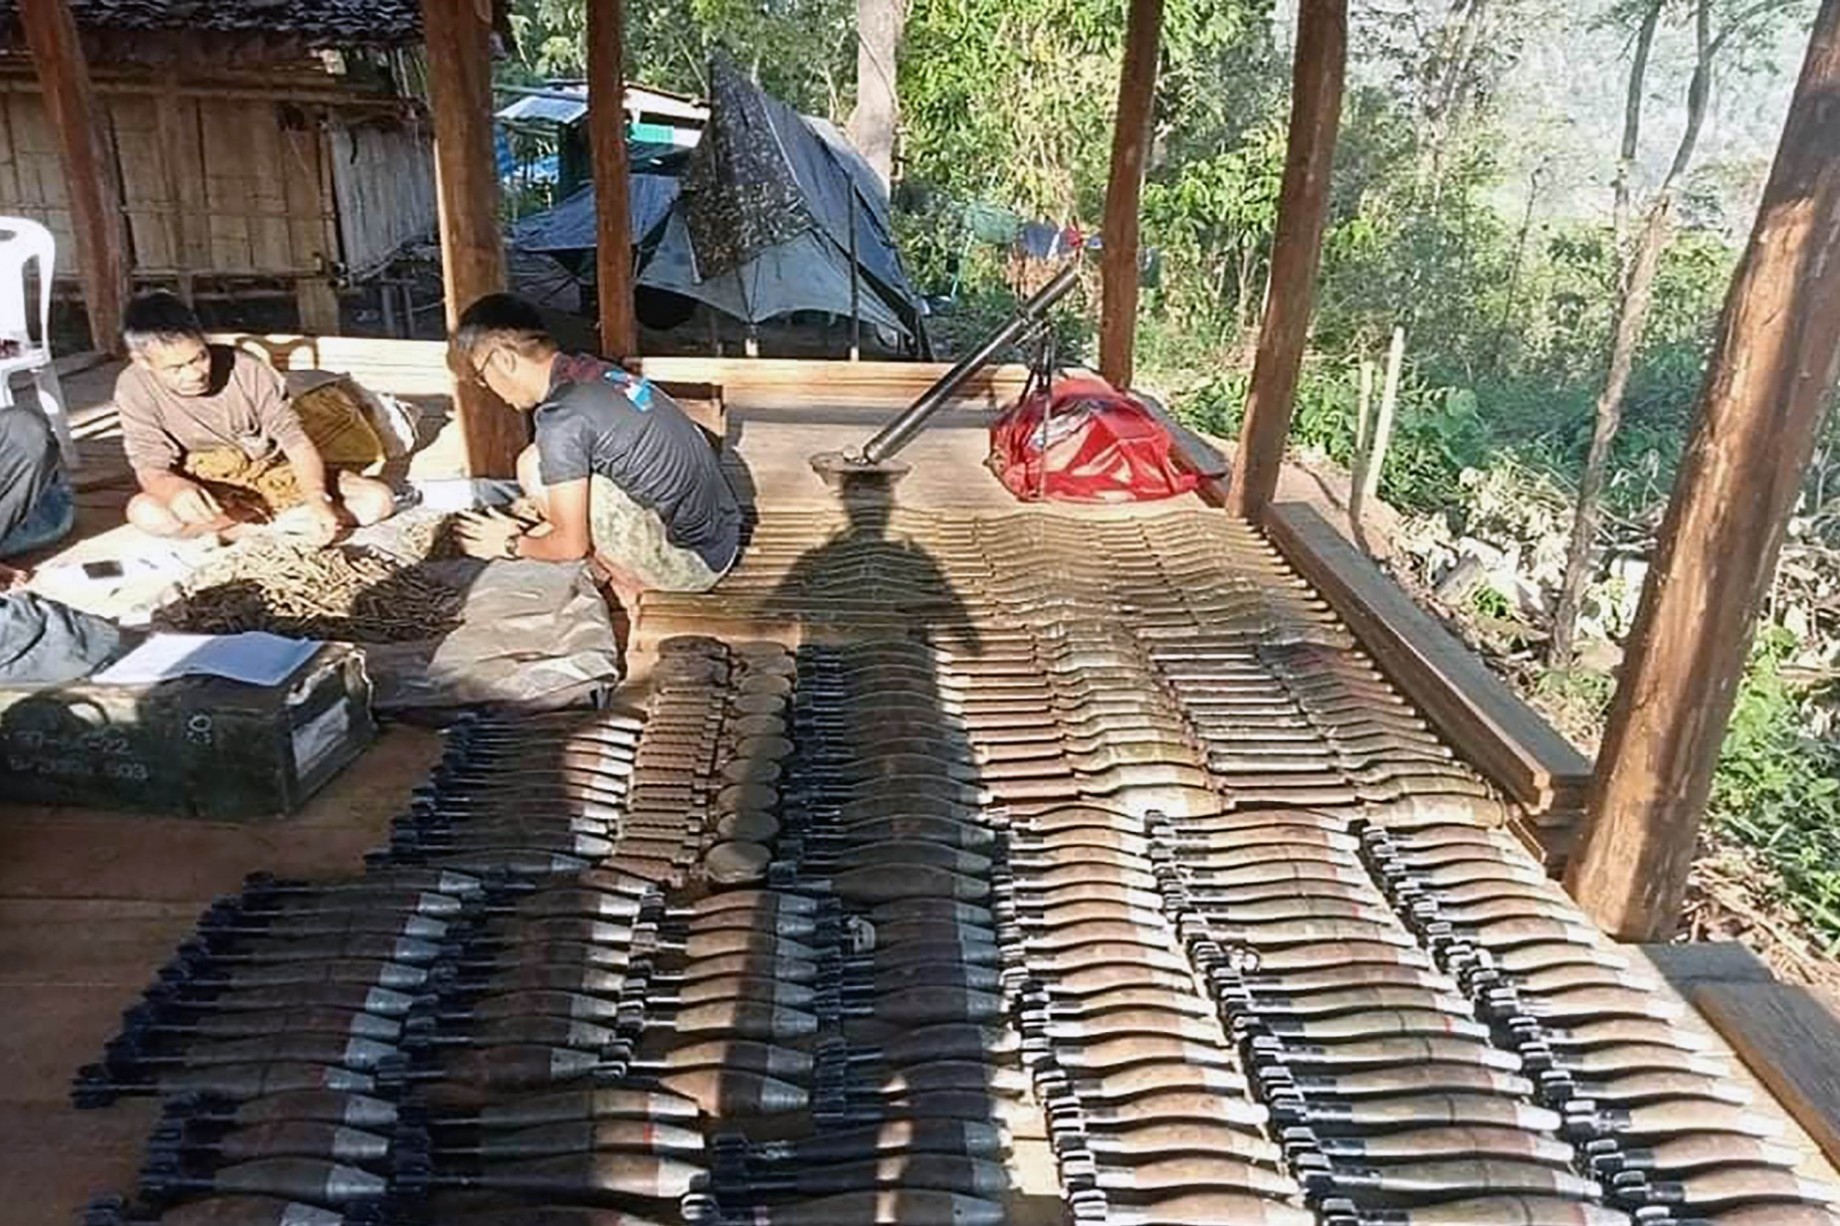 克伦民族联盟在袭击泰国边境附近的军政府基地时杀死士兵并夺取“大量武器”